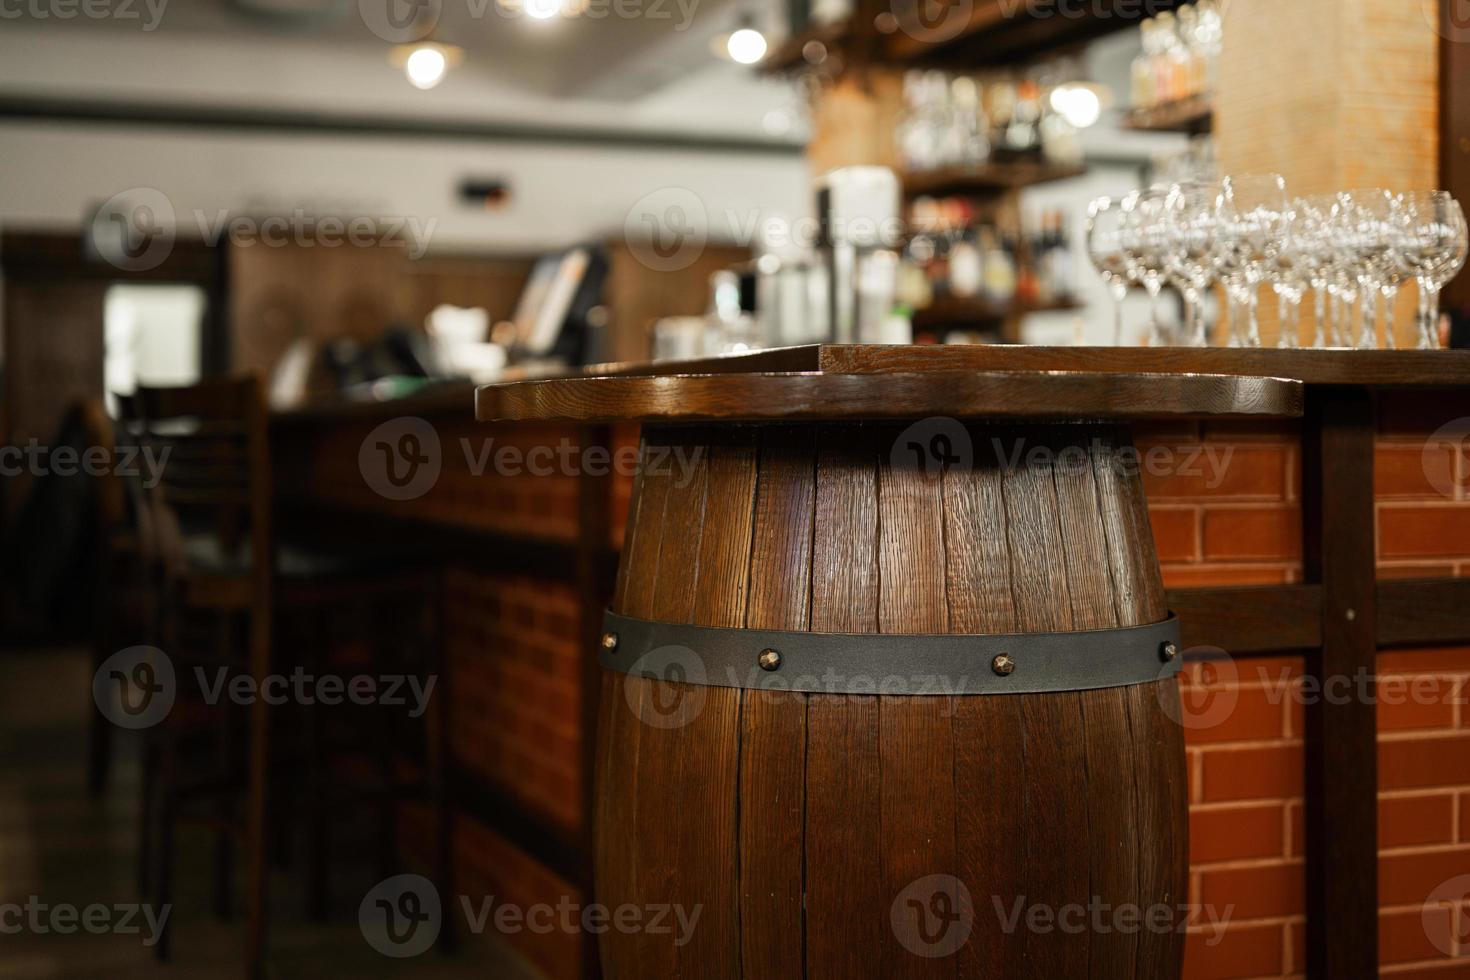 leeg bar met oud vat interieur, houten meubilair en kroeg teller zonder barmannen. foto